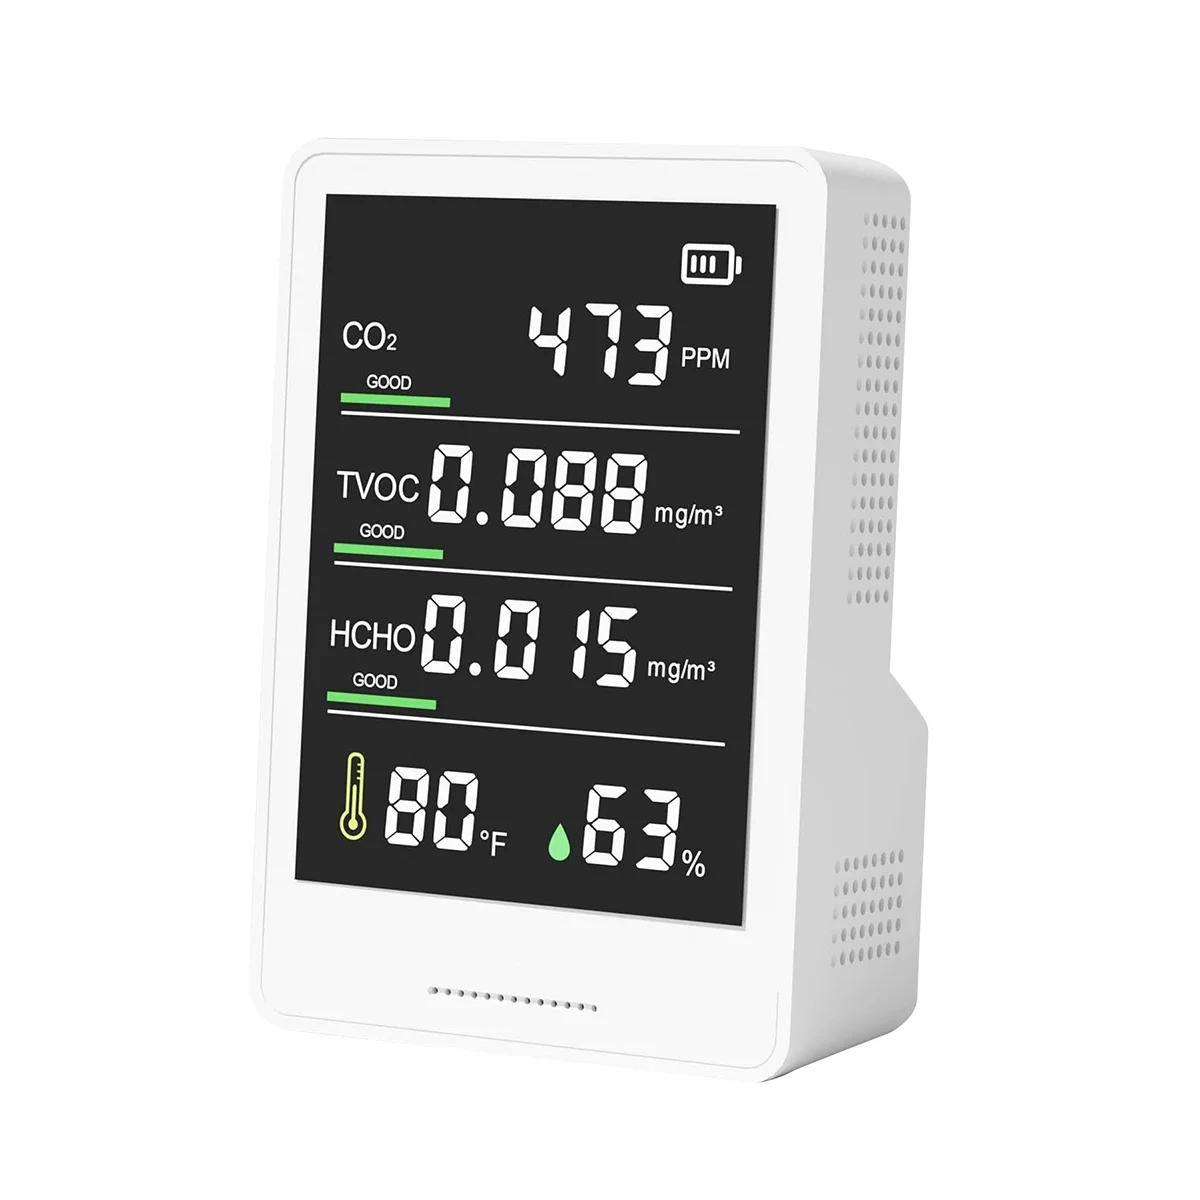 Тестер контроля качества воздуха, портативный детектор CO2 CO2, TVOC, HCHO, счетчик частиц влажности и температуры для домашнего автомобиля